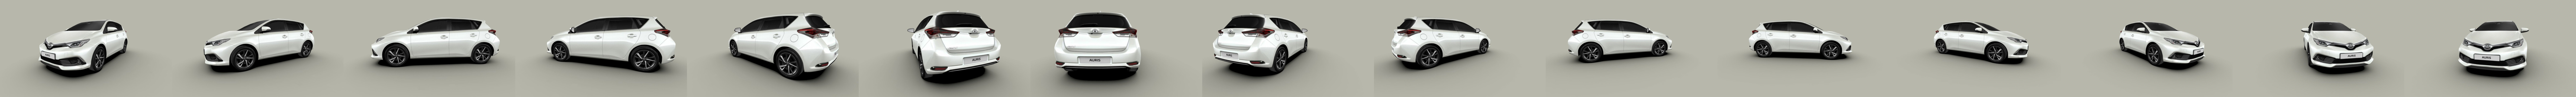 Toyota Auris Touring hybride 2016 Modèle 3D